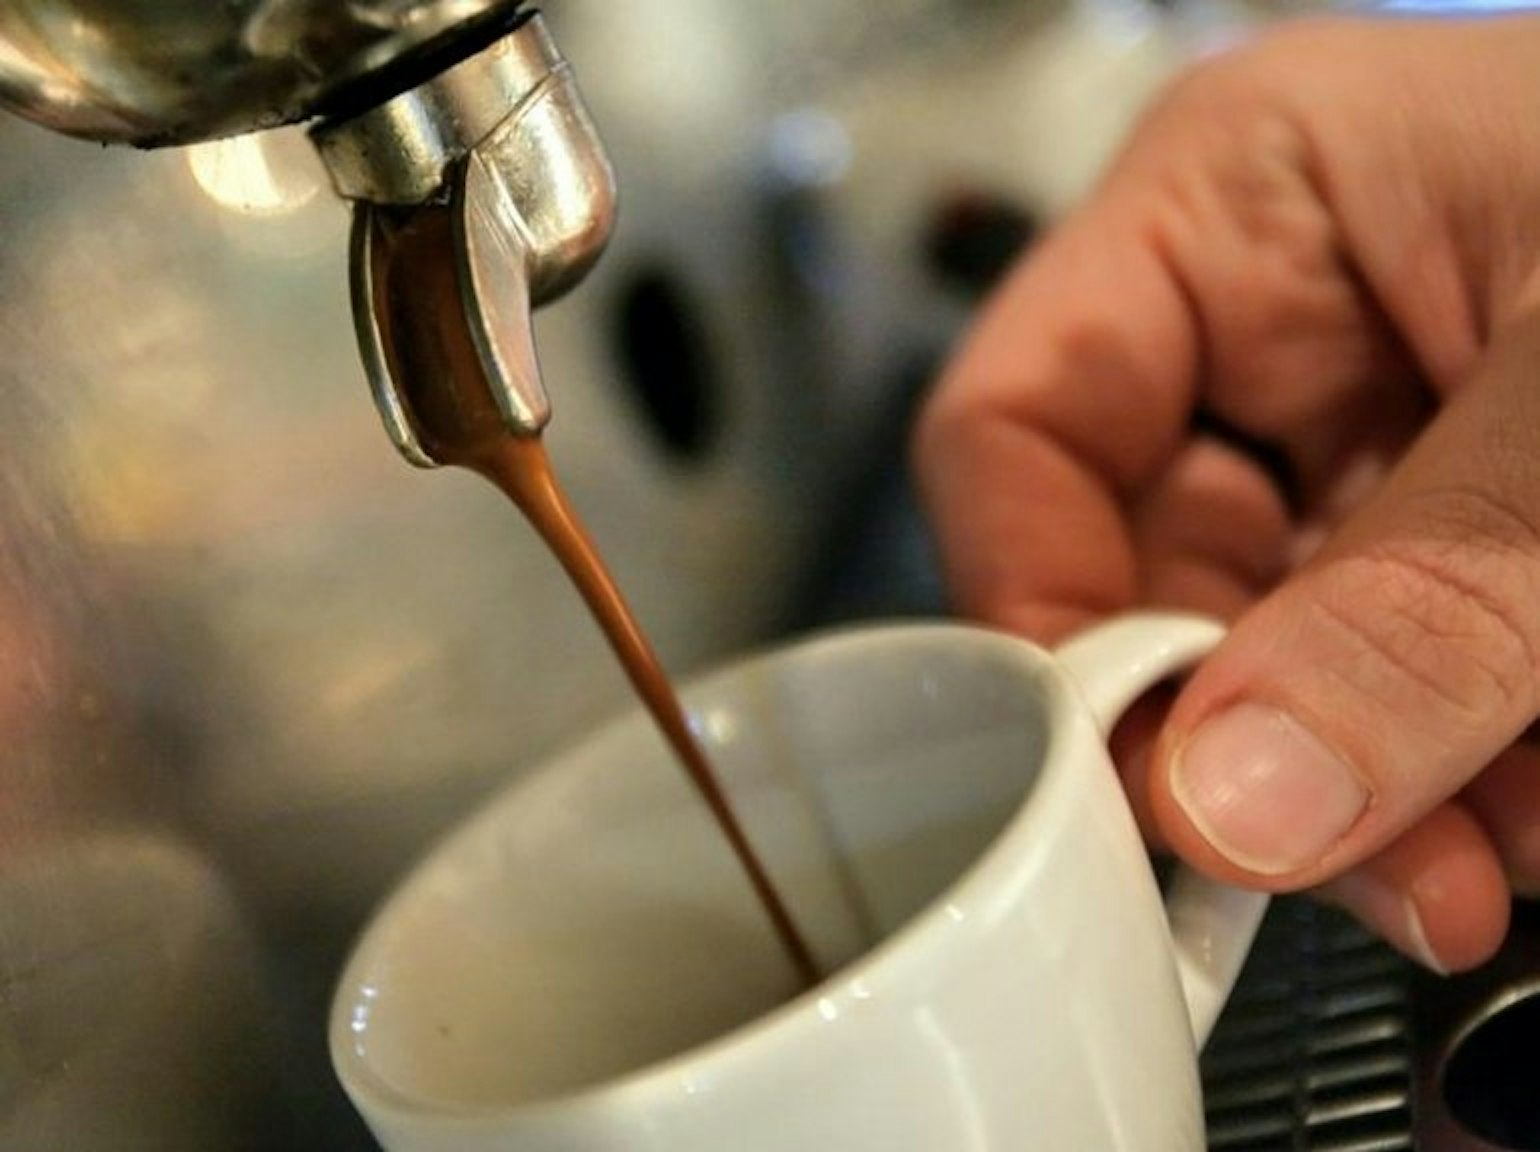 Mit einem Wert von über 100 Milligramm pro 100 Milliliter ist der Espresso der Spitzenreiter unter den koffeinhaltigen Produkten.